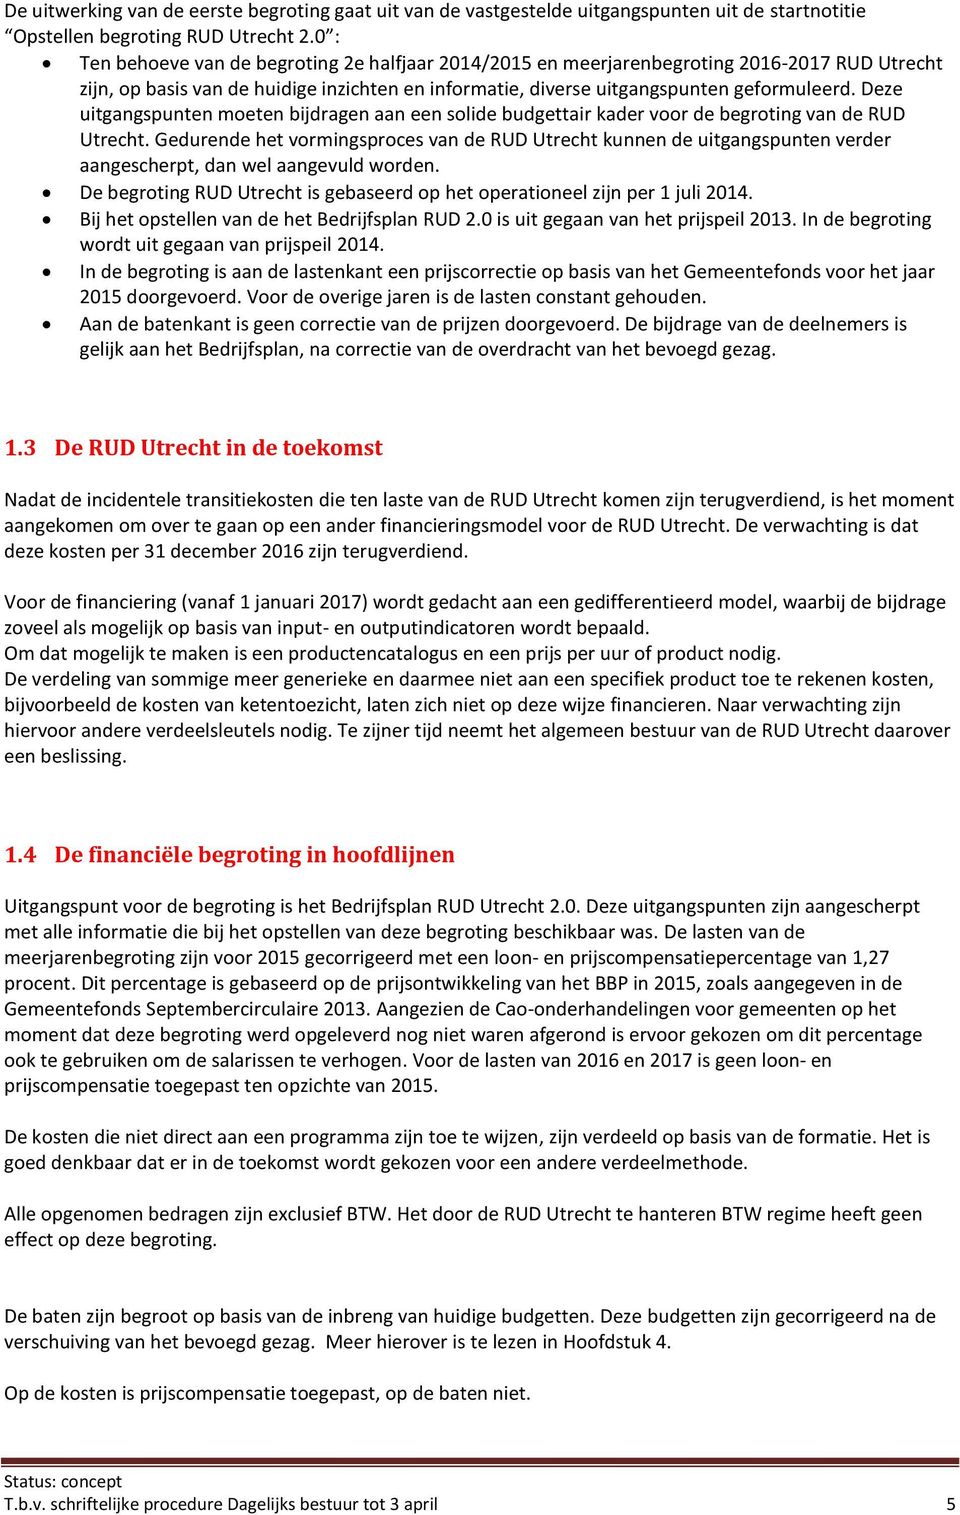 Deze uitgangspunten moeten bijdragen aan een solide budgettair kader voor de begroting van de RUD Utrecht.